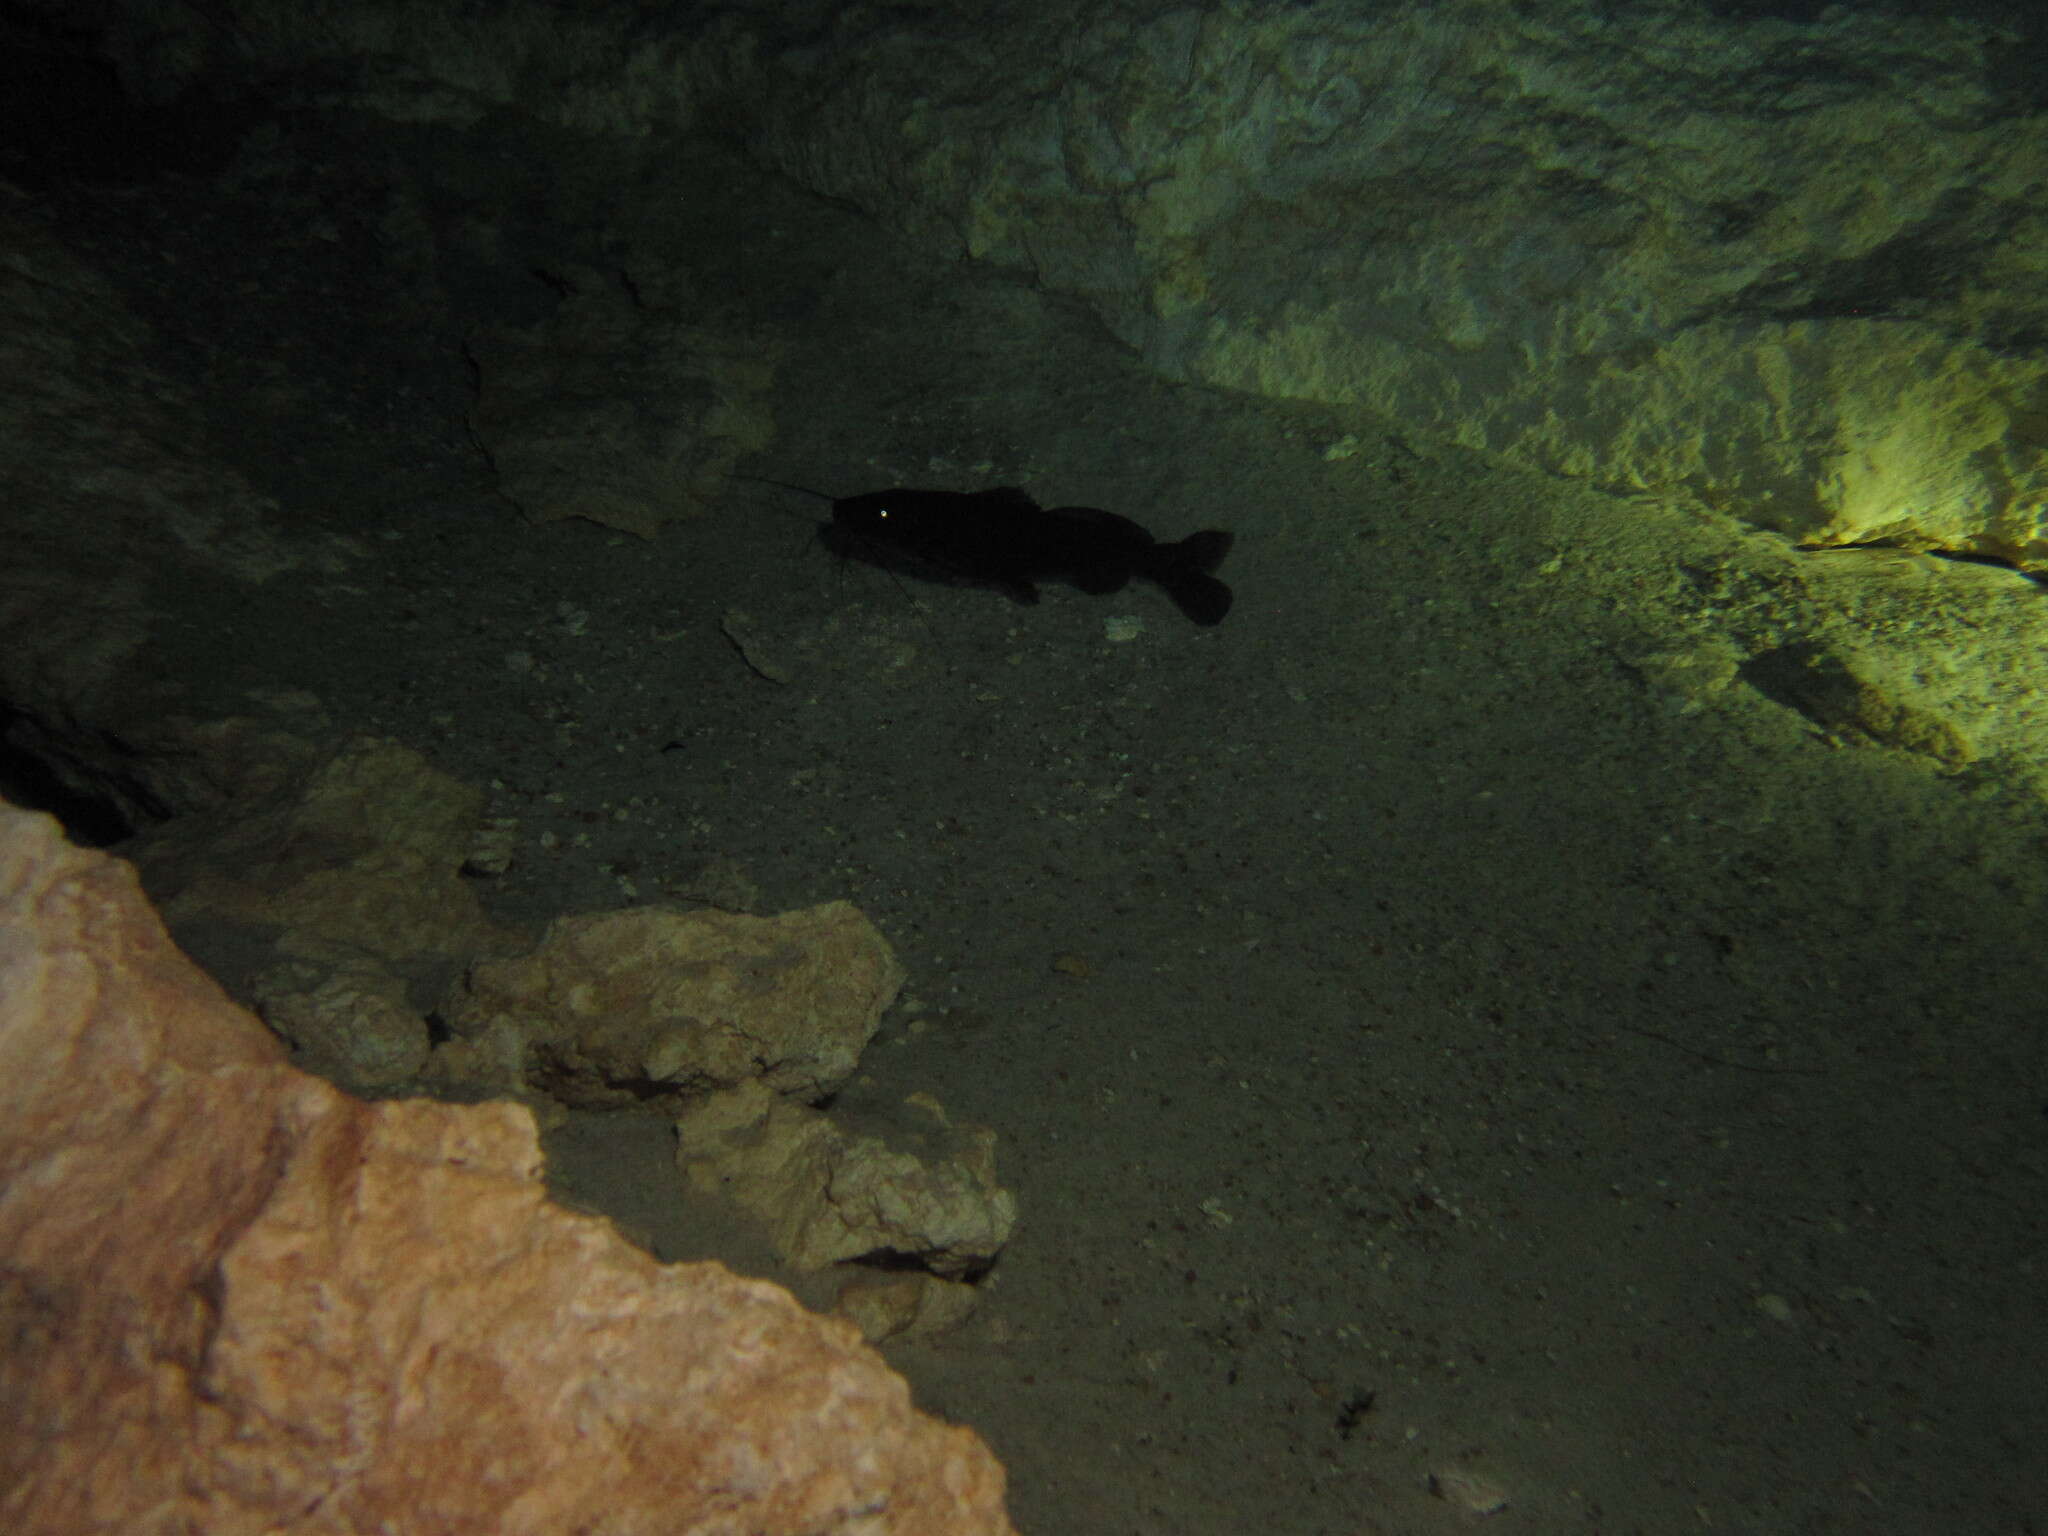 Image of Pale catfish